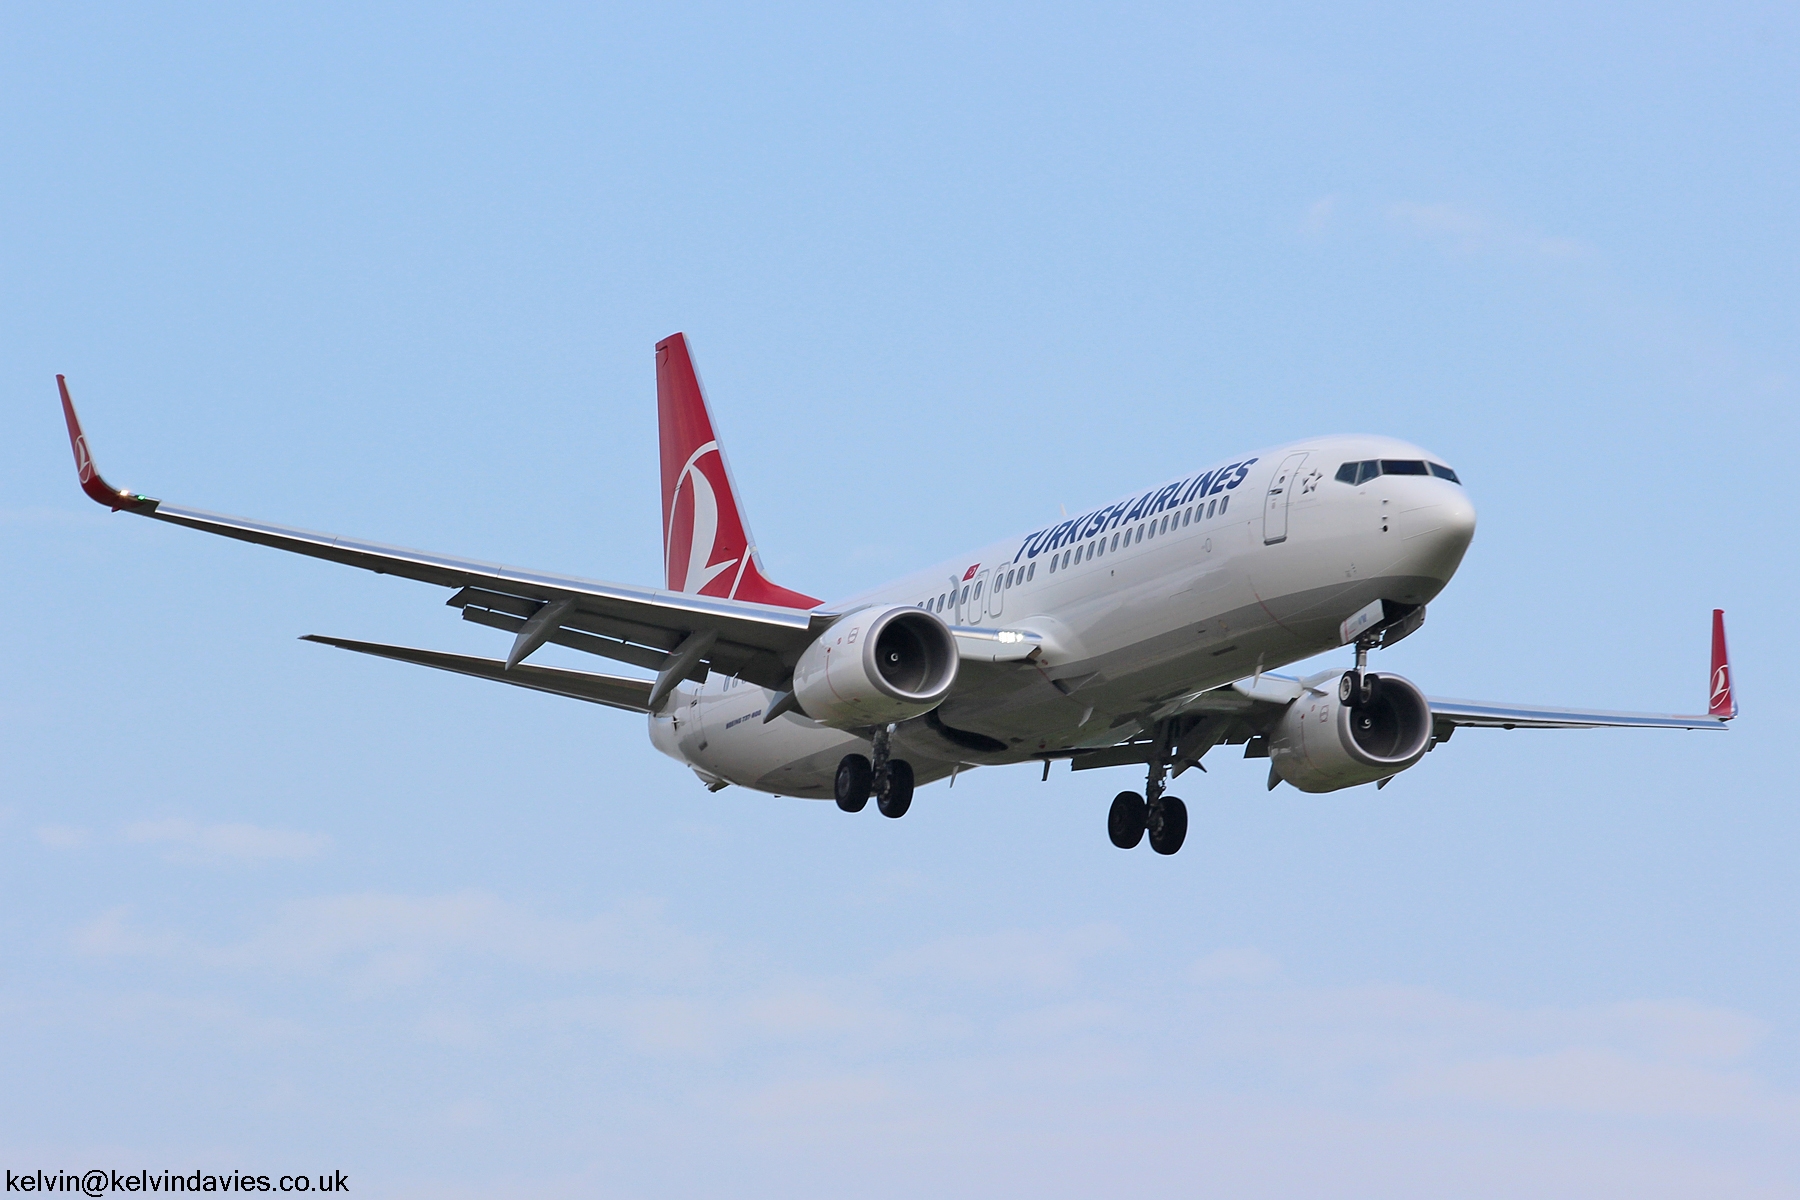 Turkish Airlines 737 TC-JVM